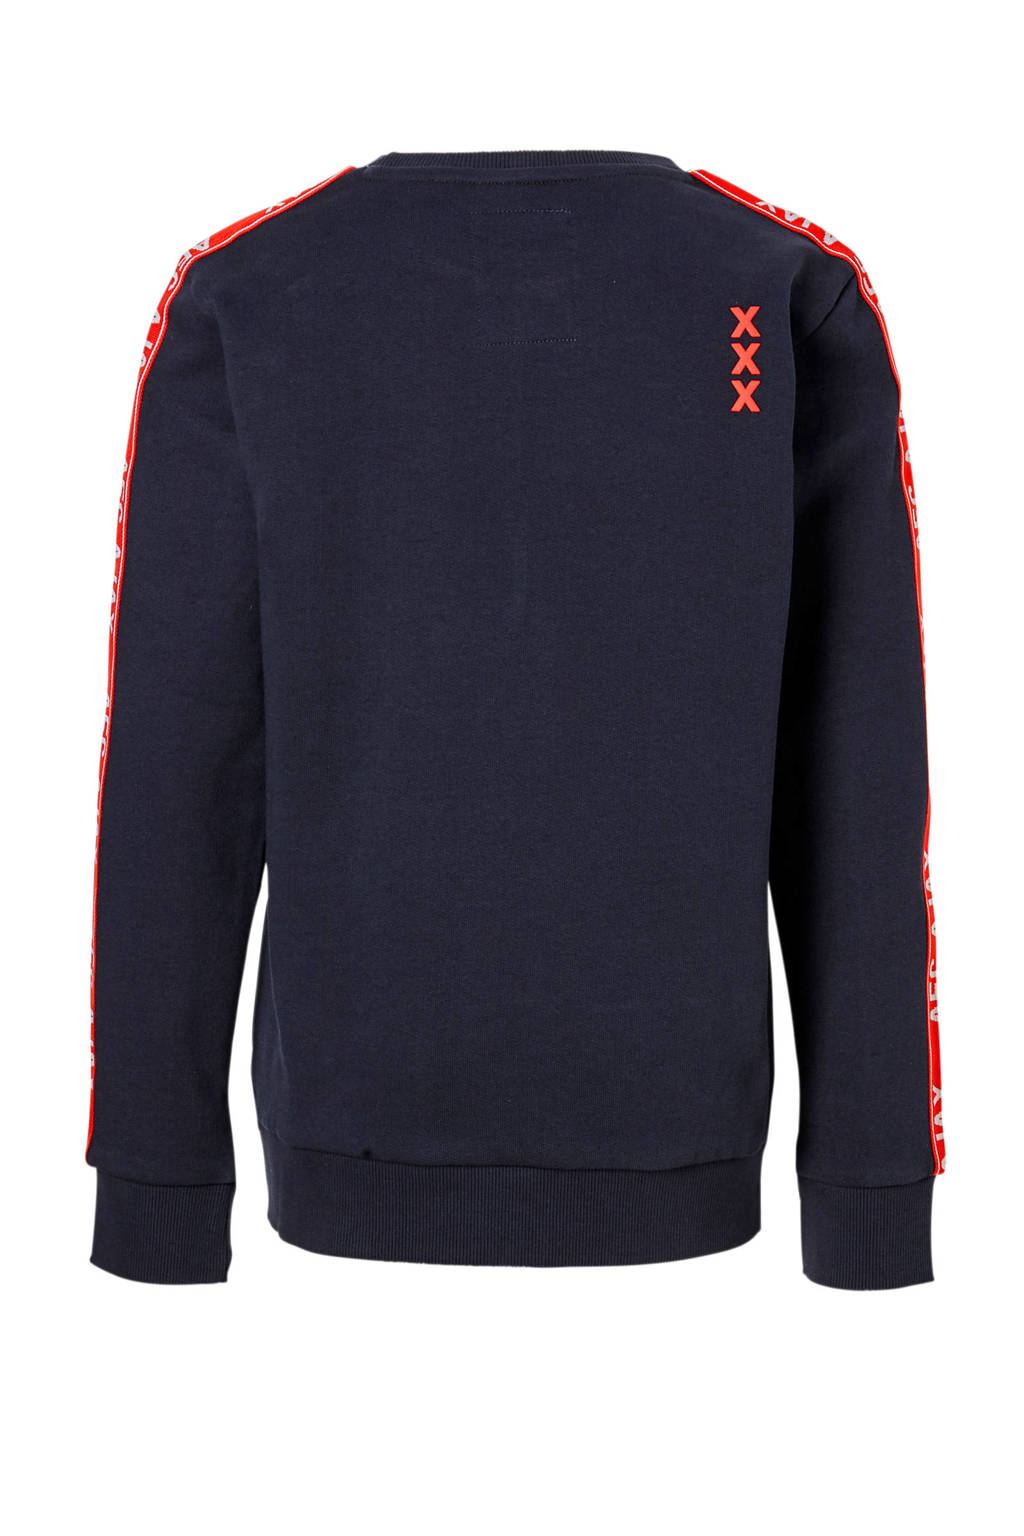 Ajax sweater Nedrow blauw |